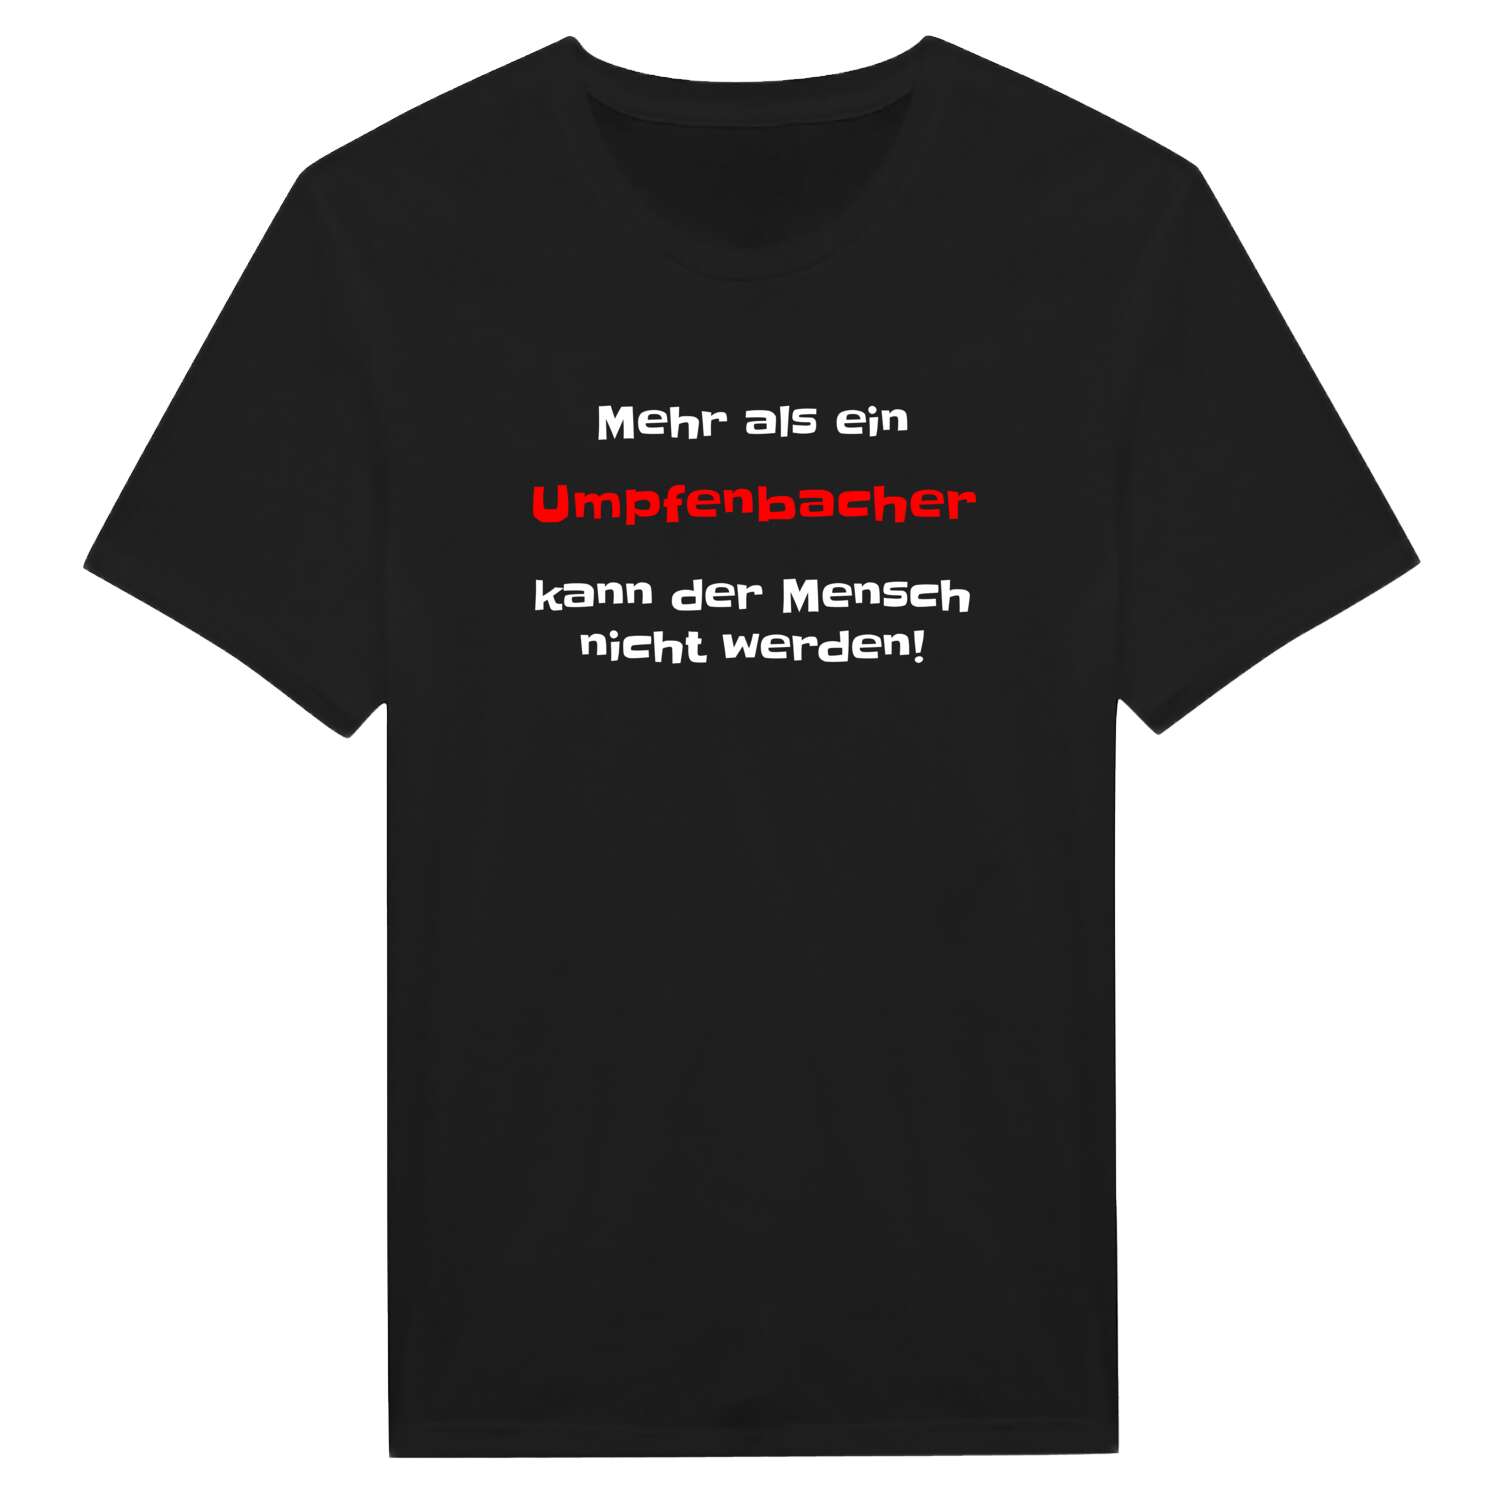 Umpfenbach T-Shirt »Mehr als ein«